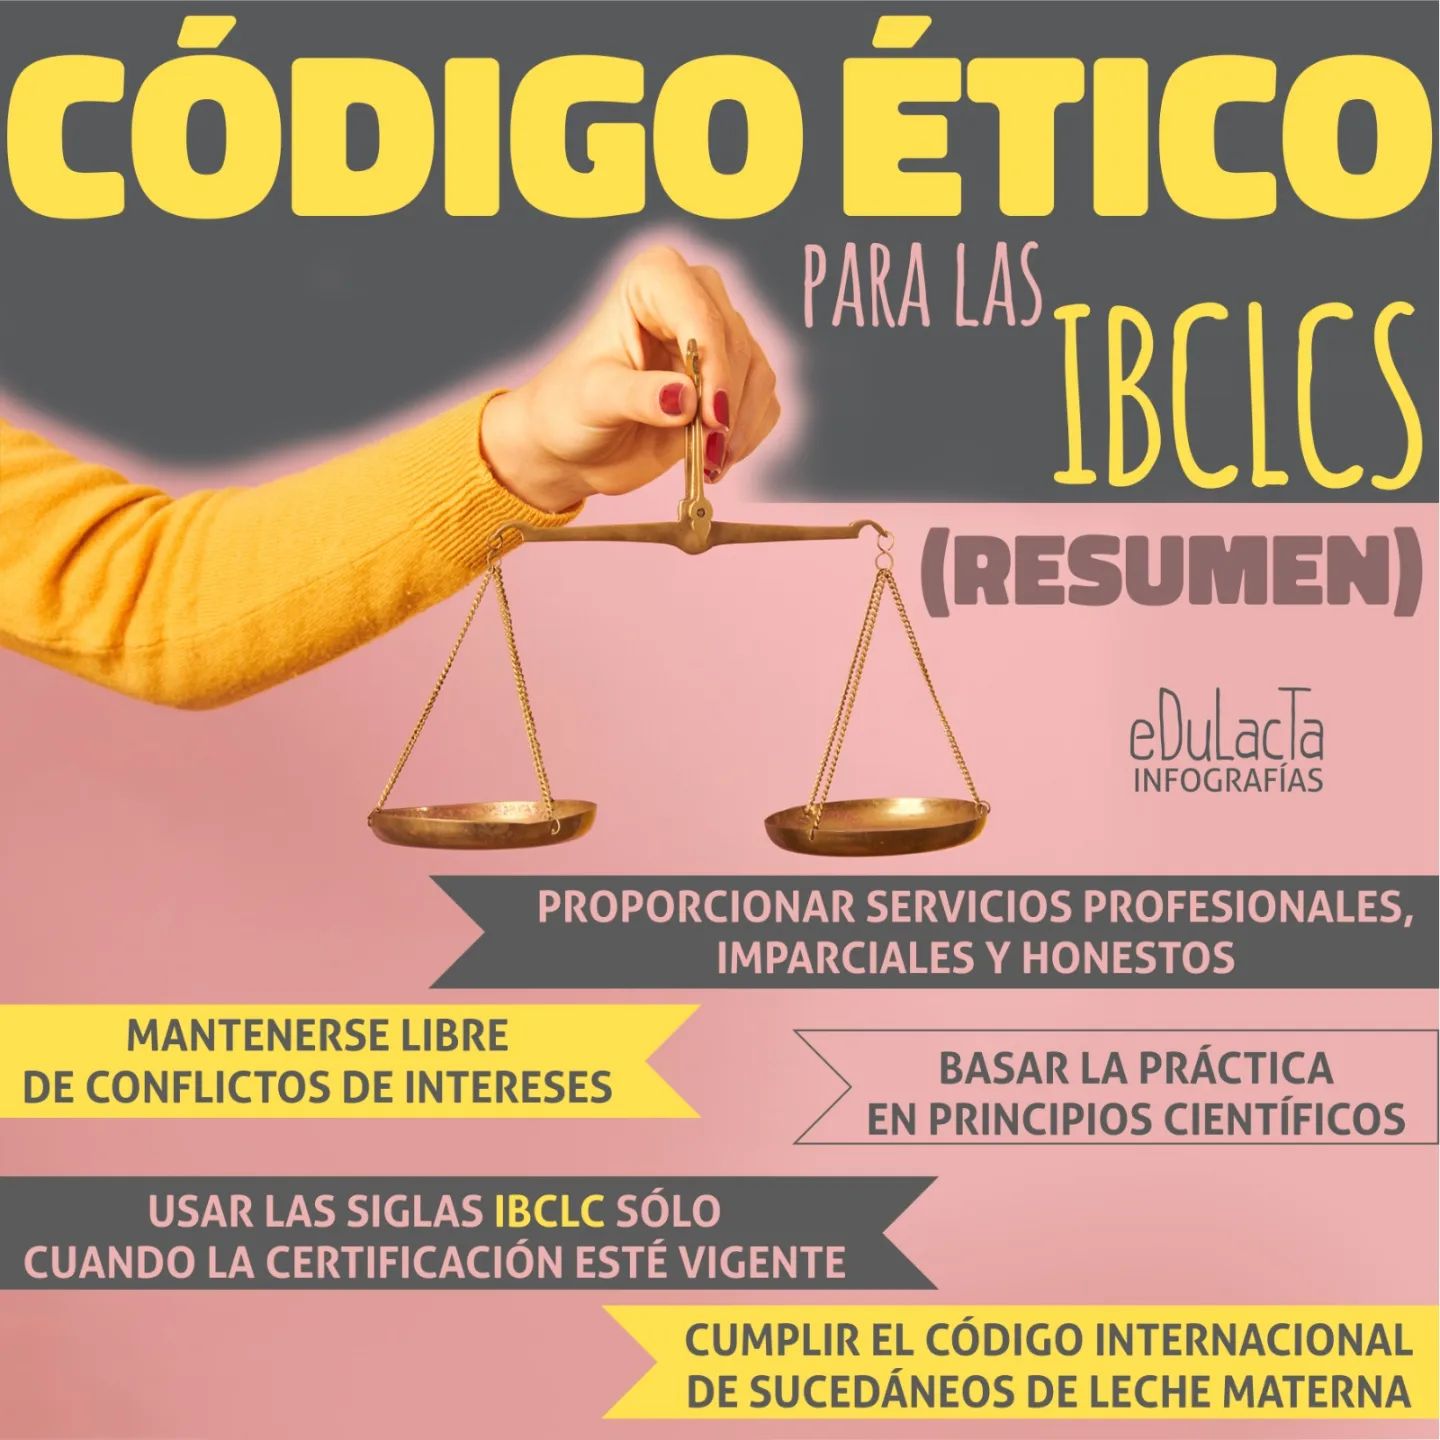 Infografía Código ético De Ibclc Edulacta 5780